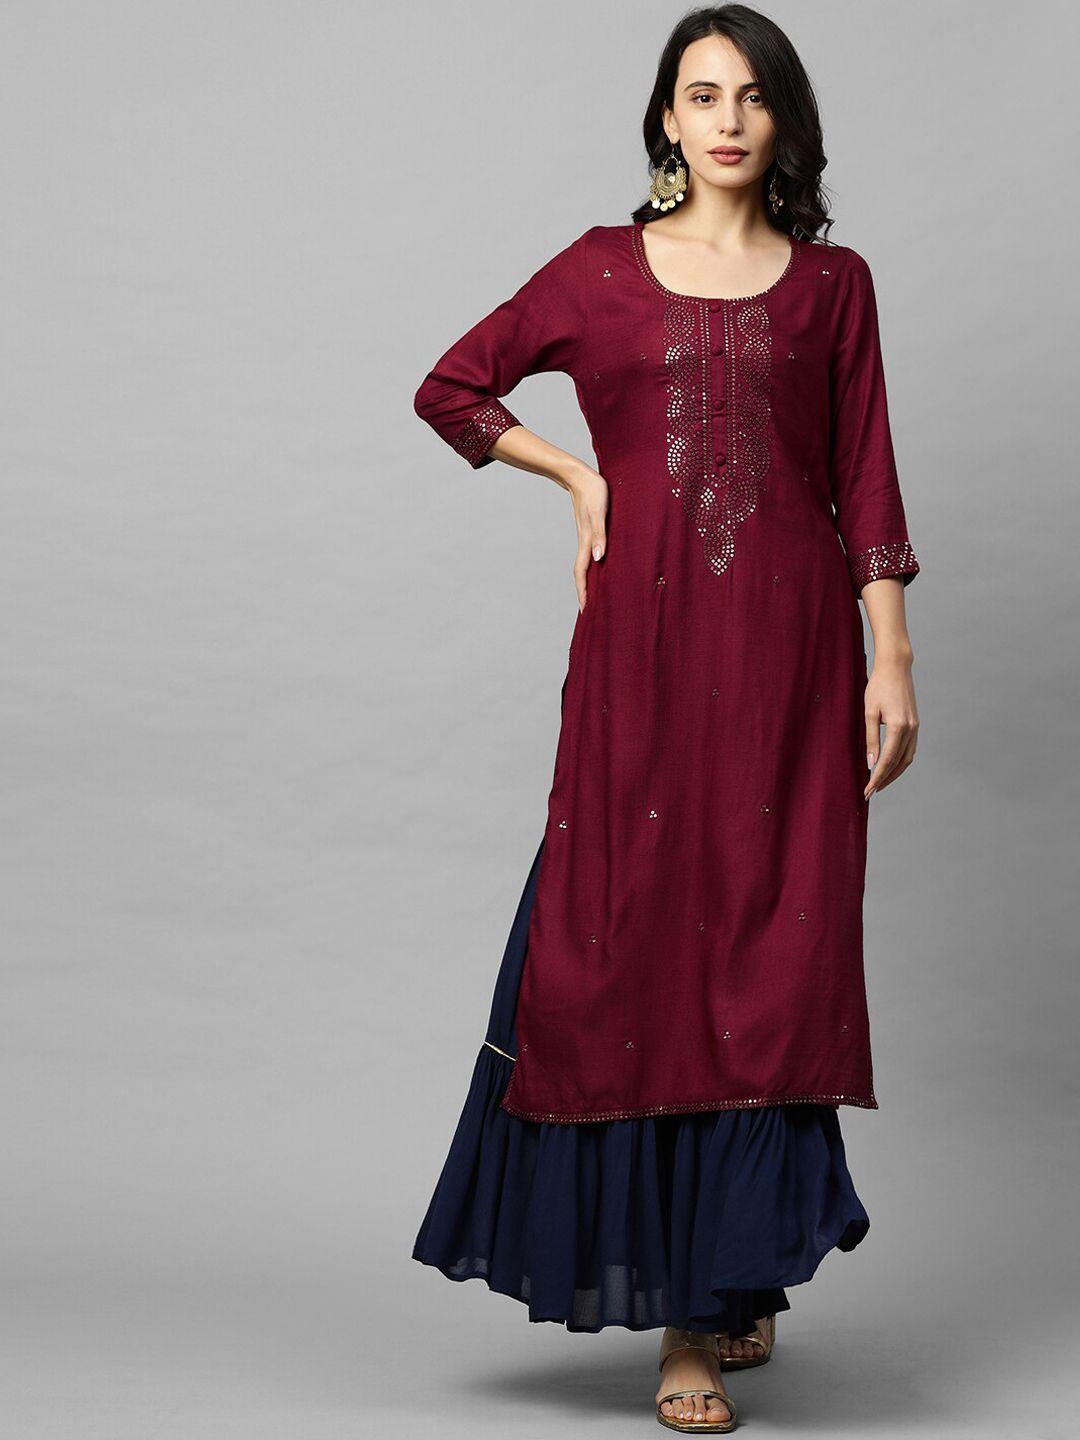 fashor burgundy yoke design embellished kurta